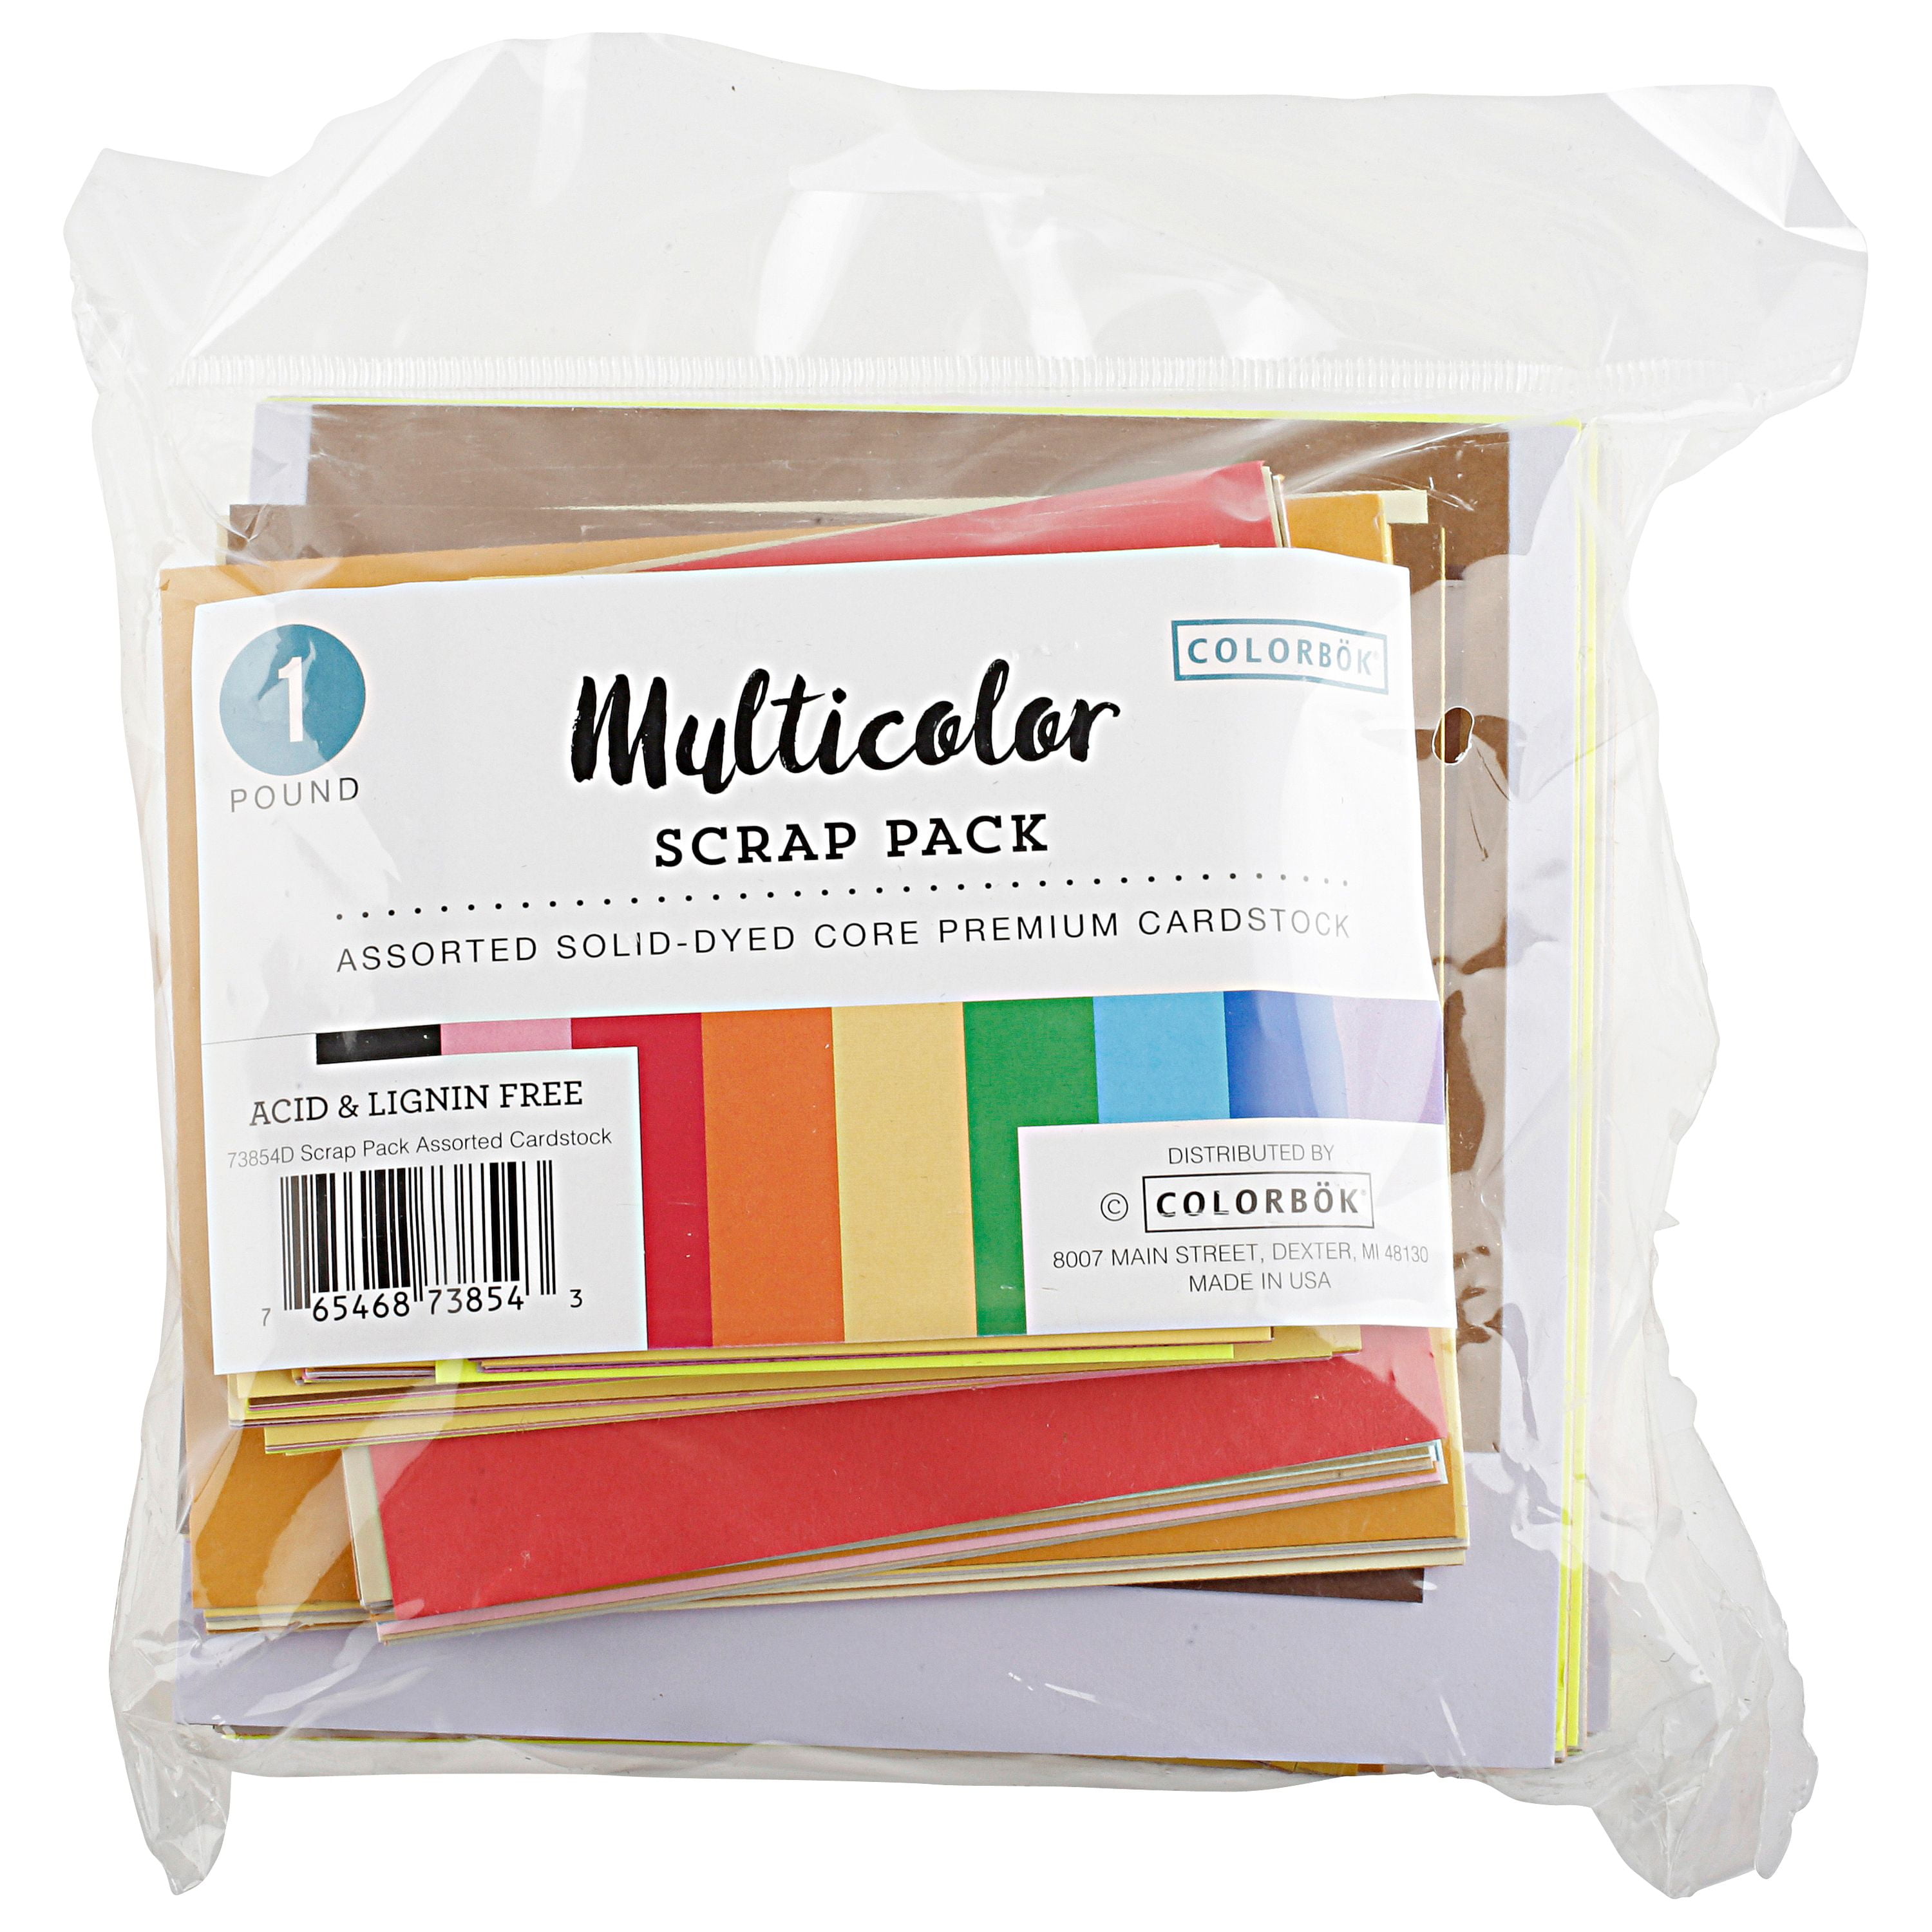 Colorbok Multicolor Scrap Pack Cardstock, 1 Each